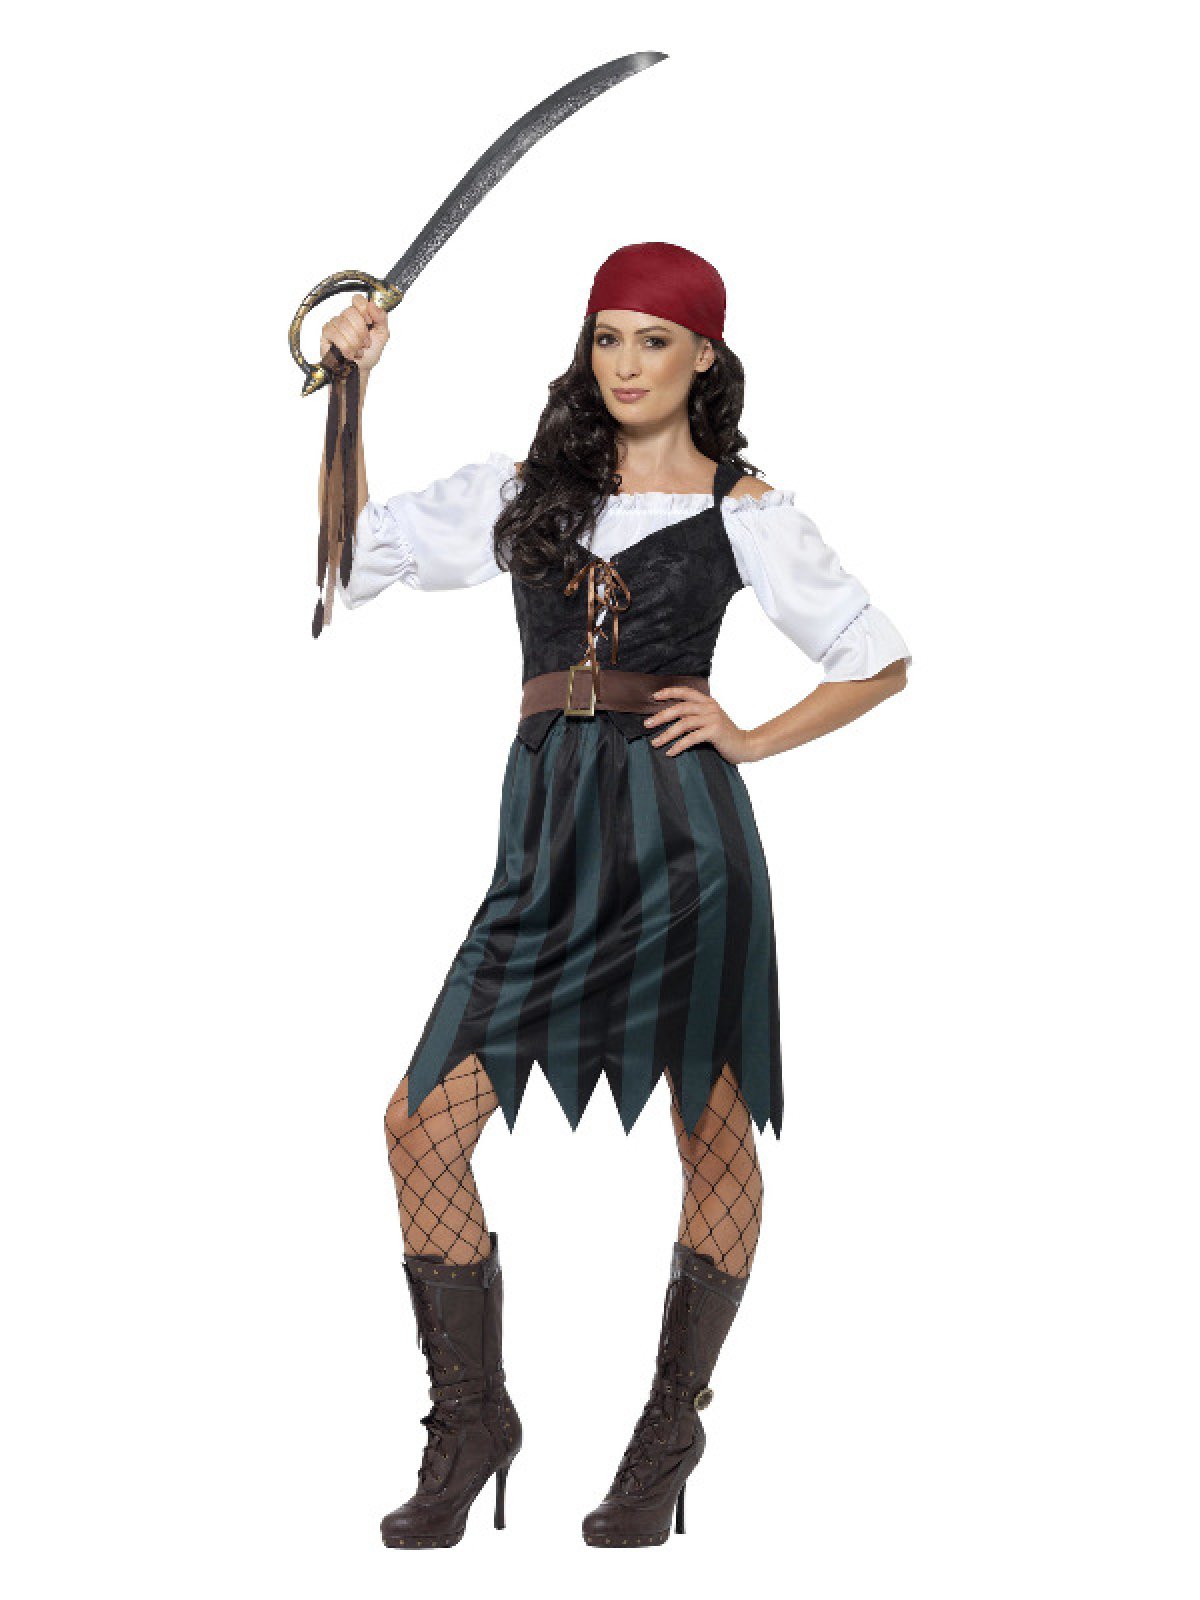 give Mængde penge uddannelse Kvindelig Pirat Kostume kostume